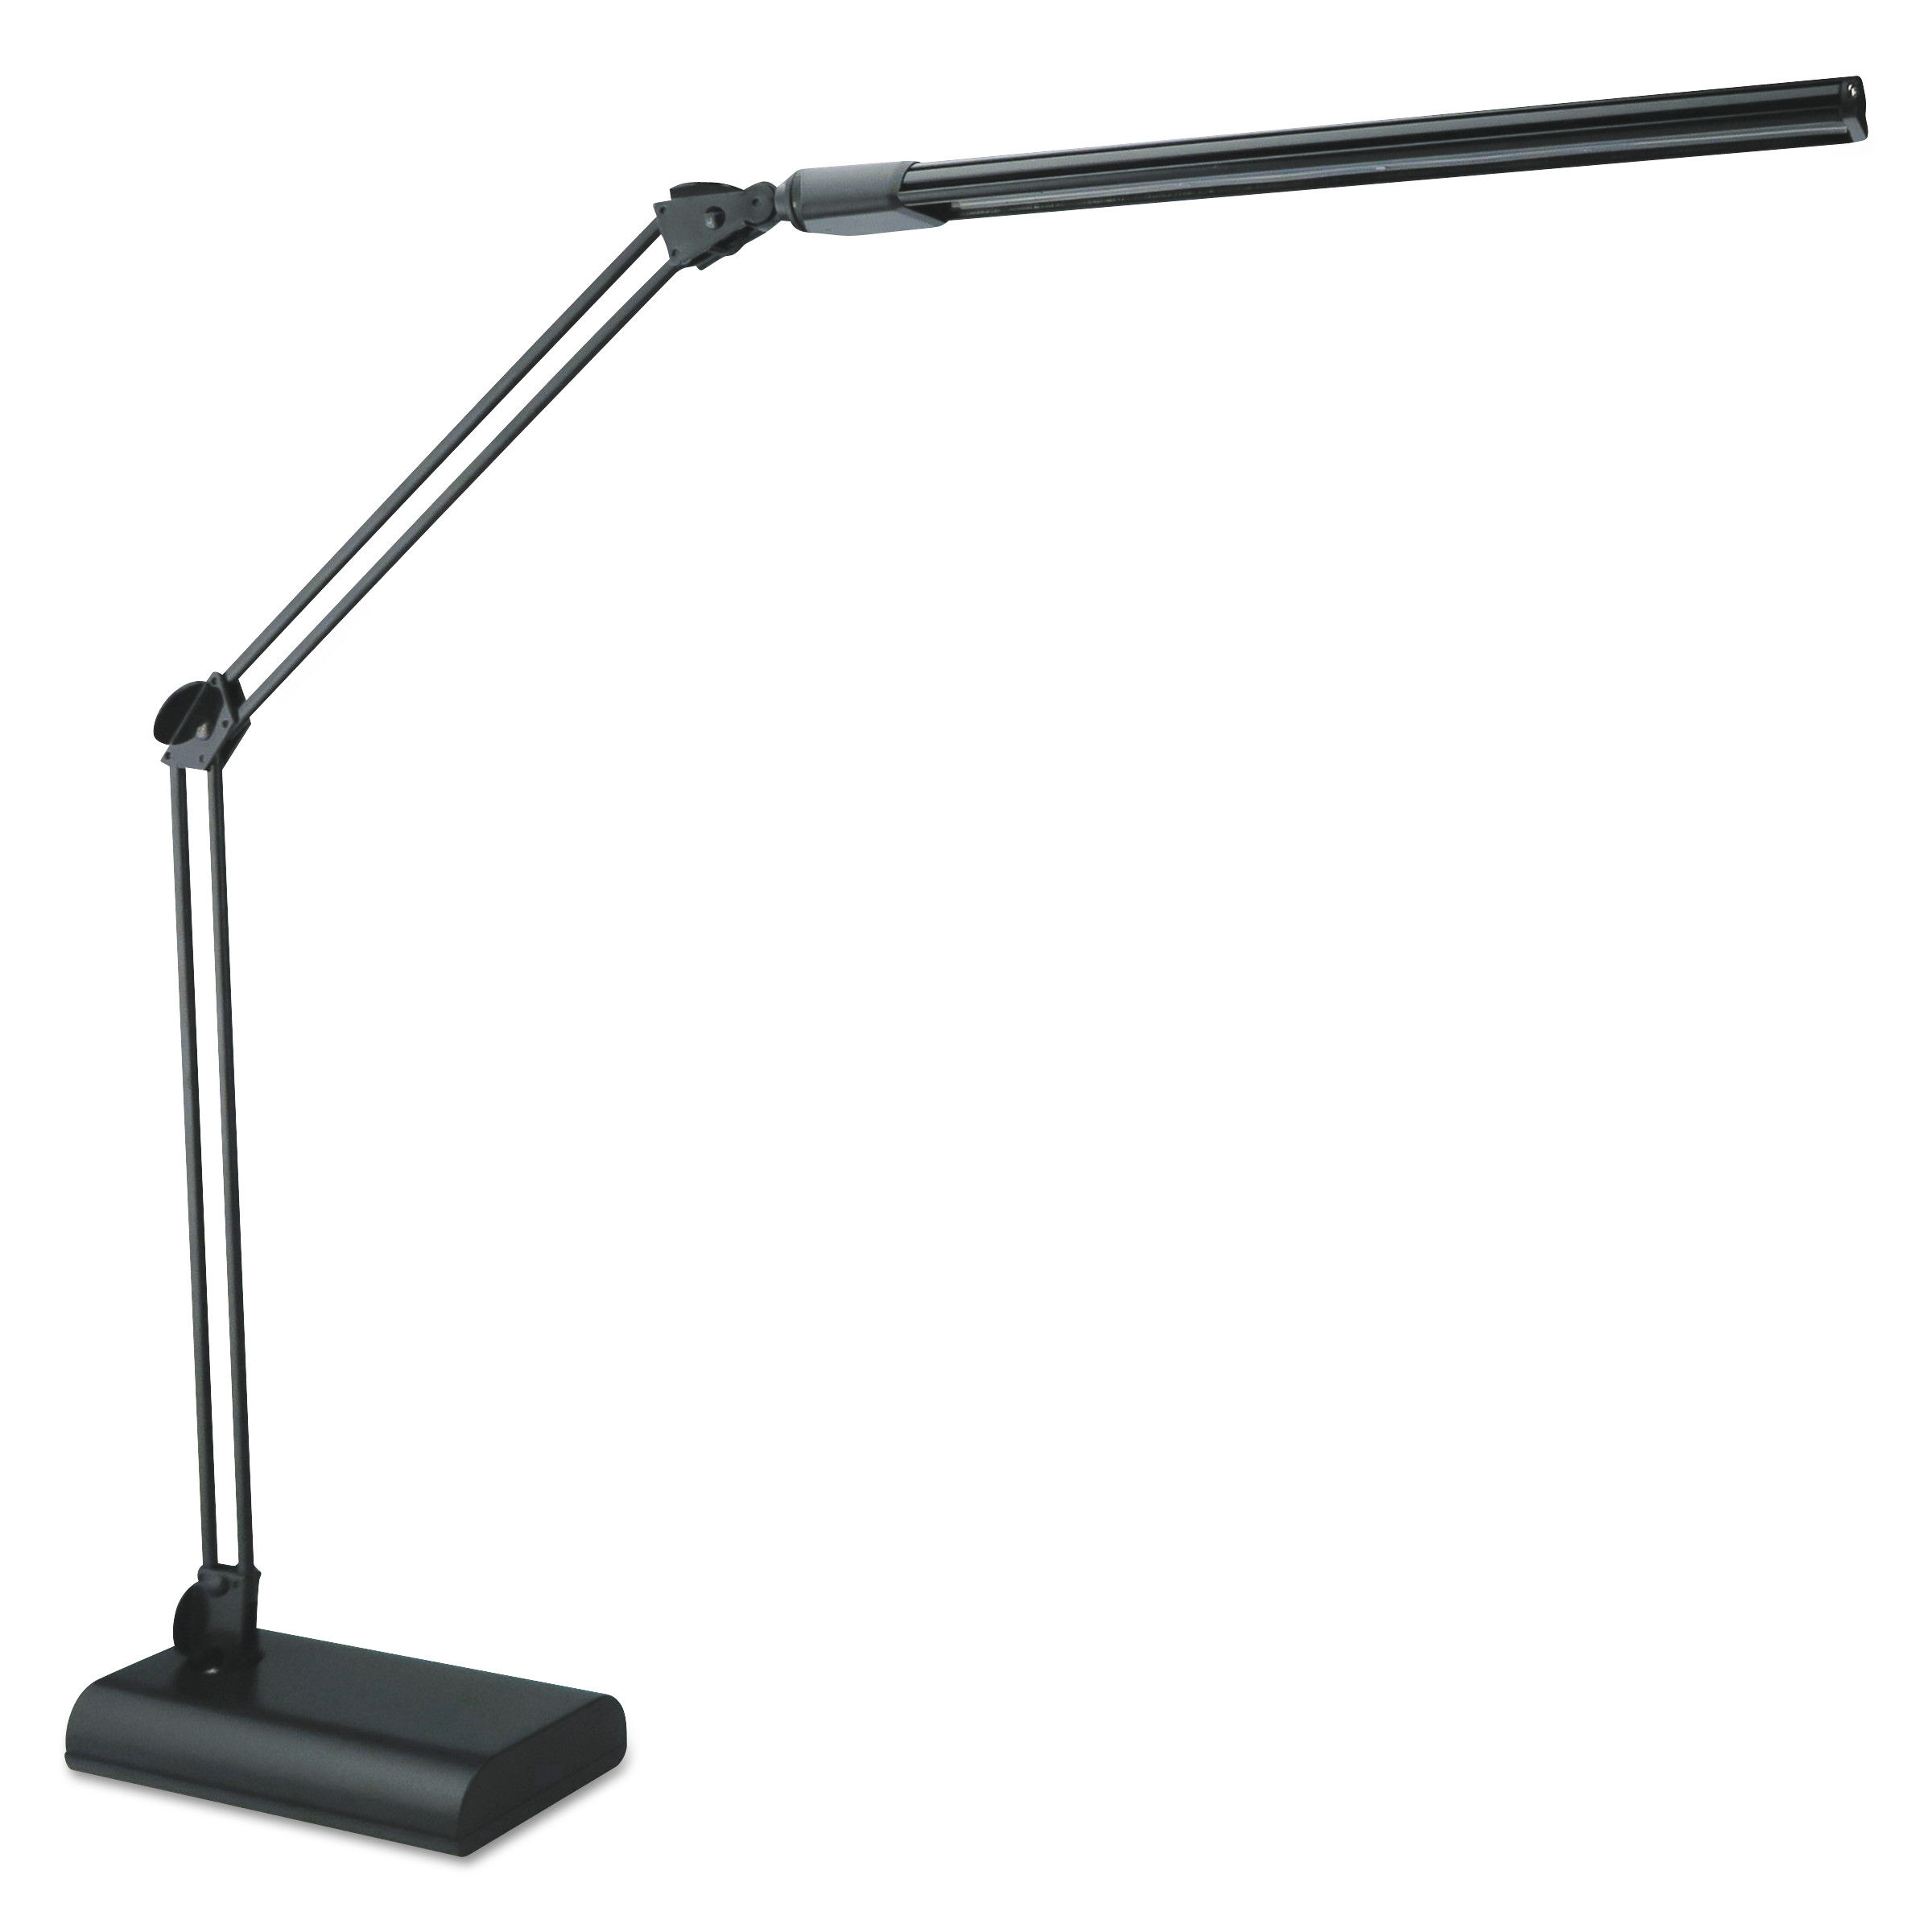 led desk lamp